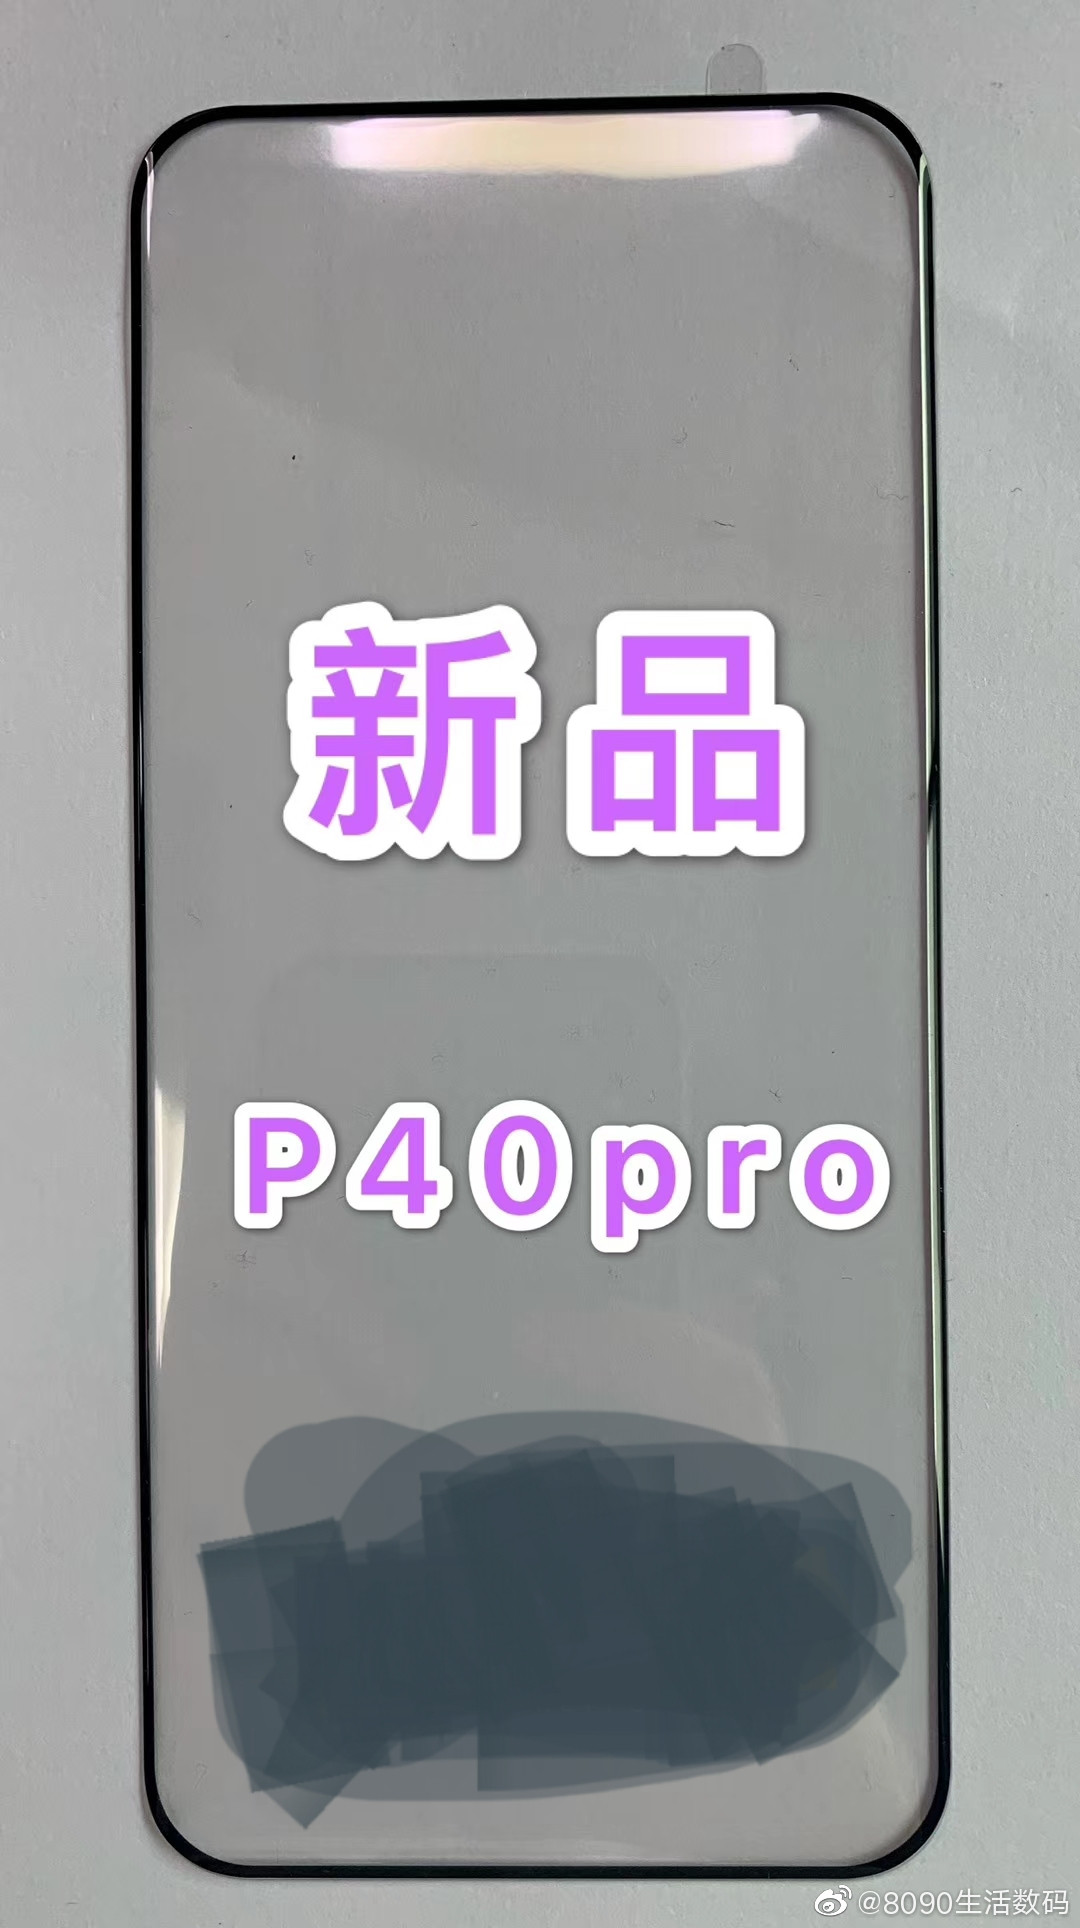 Huawei P40 Pro | Weibo